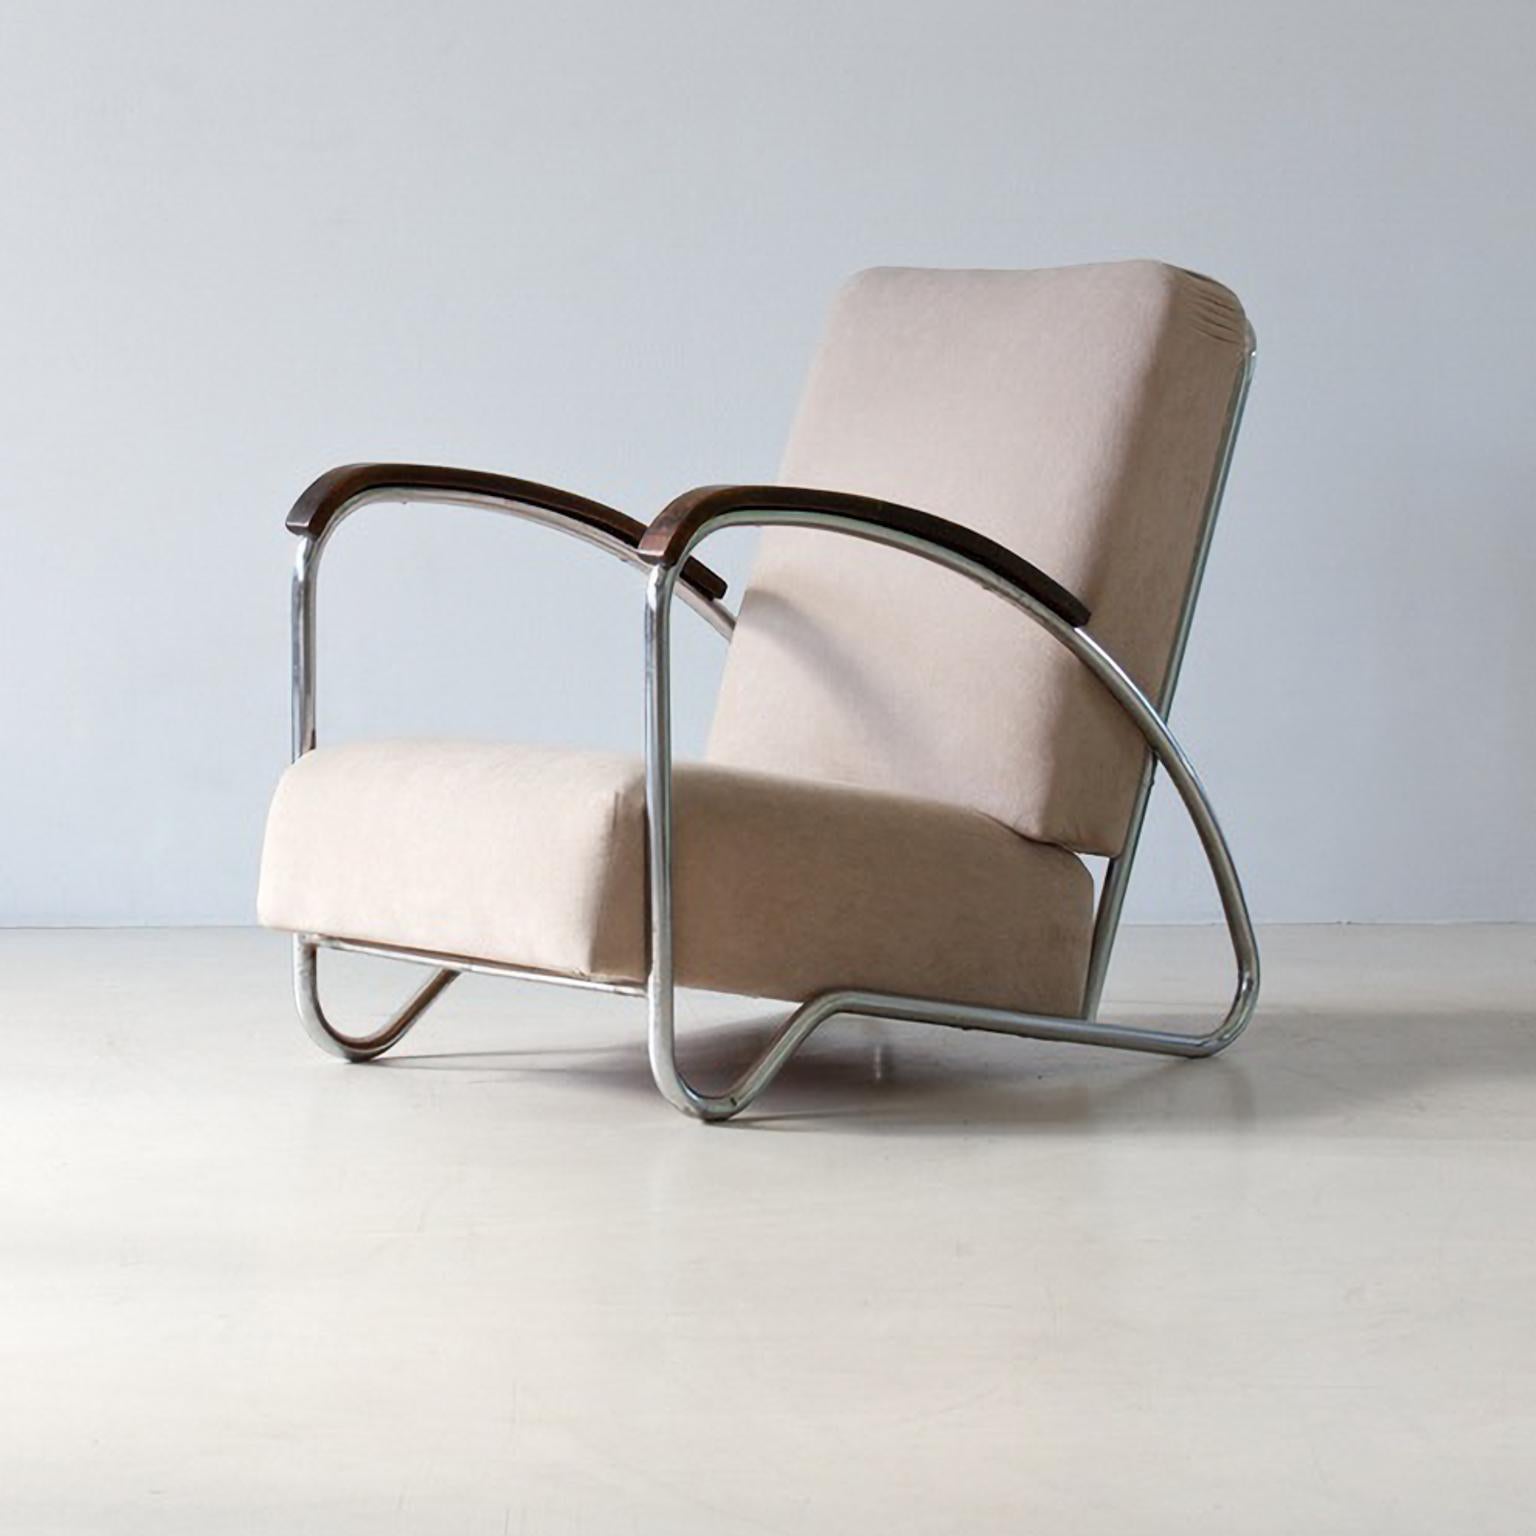 Modernistische Stahlrohrsessel mit elegant geschwungener Form. Die Polsterung kann mit Stoff oder Leder bezogen werden. 
Die Sessel wurden von Gottwald, Tschechoslowakei, um 1930 entworfen und hergestellt.